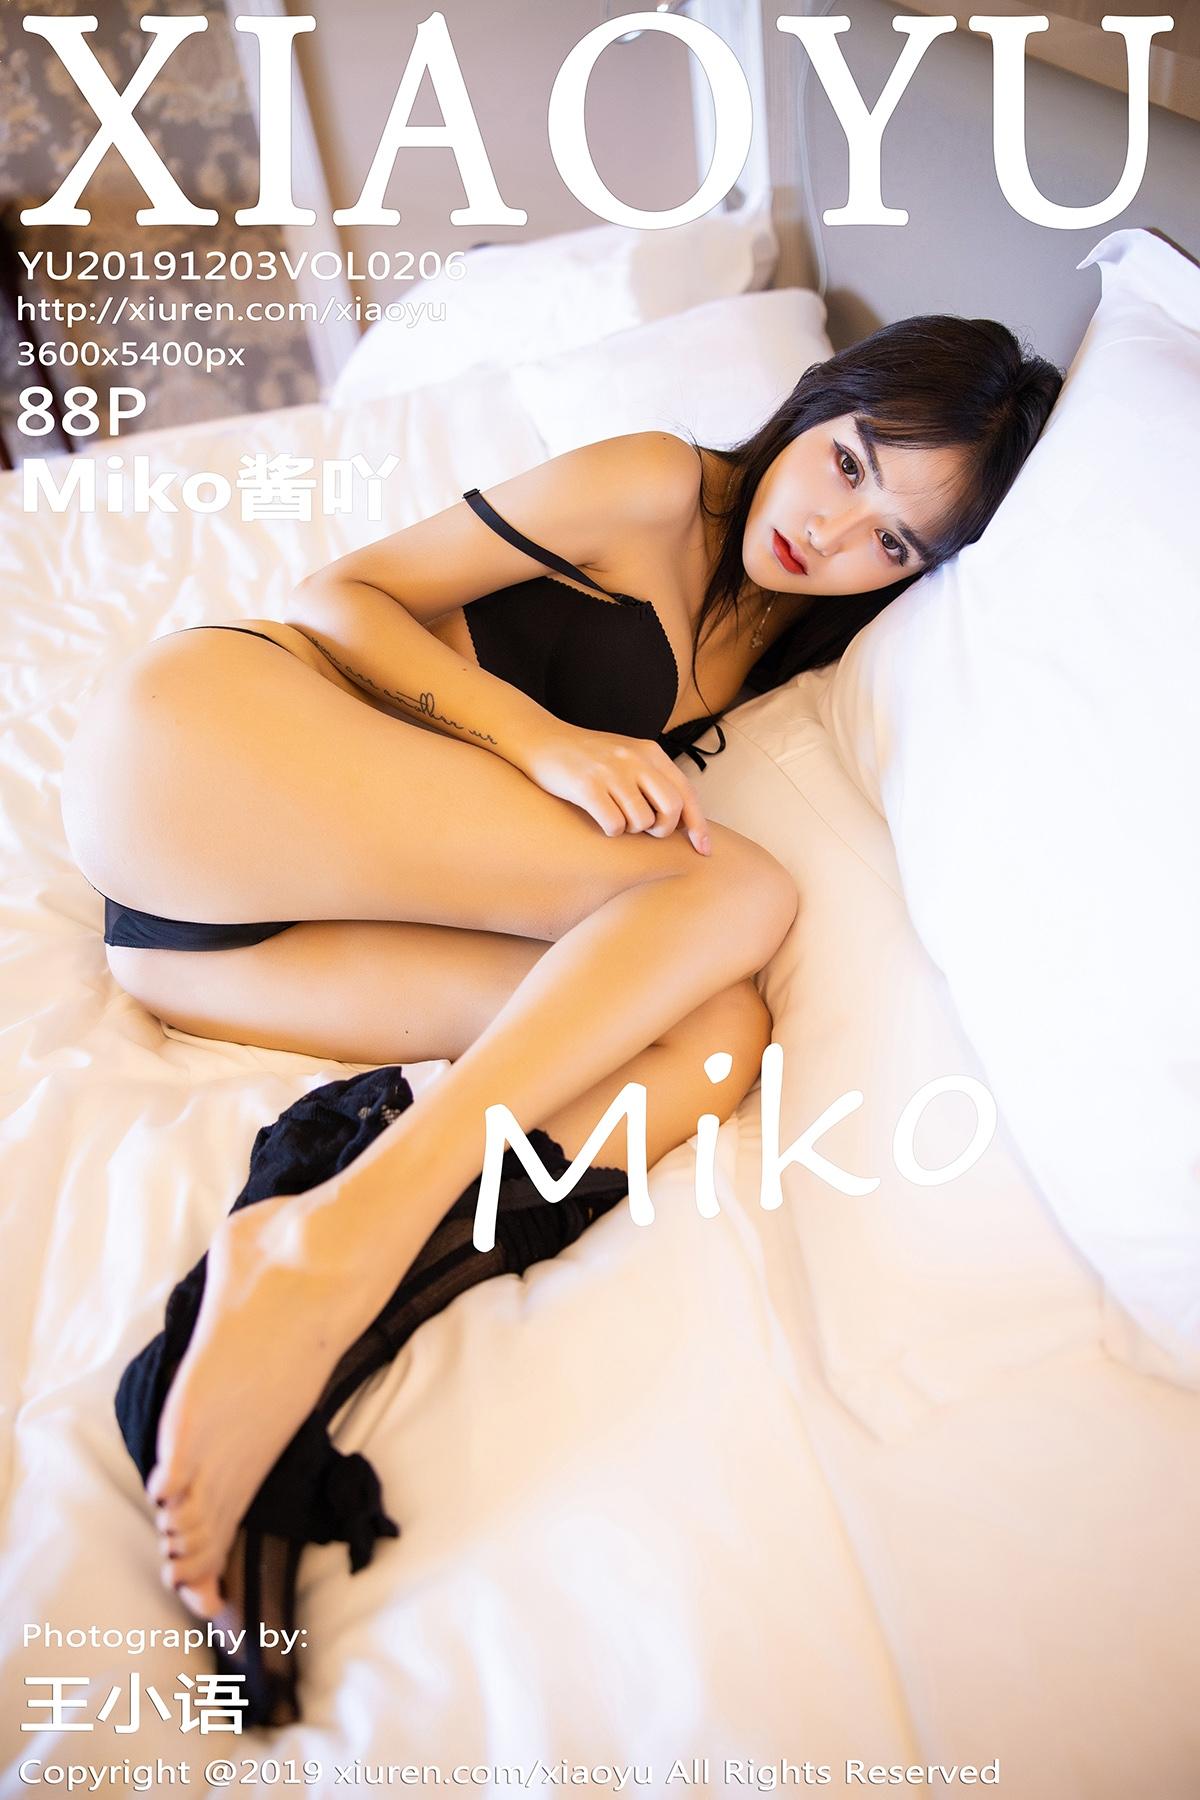 Xiaoyu 语画界 2019.12.03 Vol.206 Miko酱吖 - 87.jpg